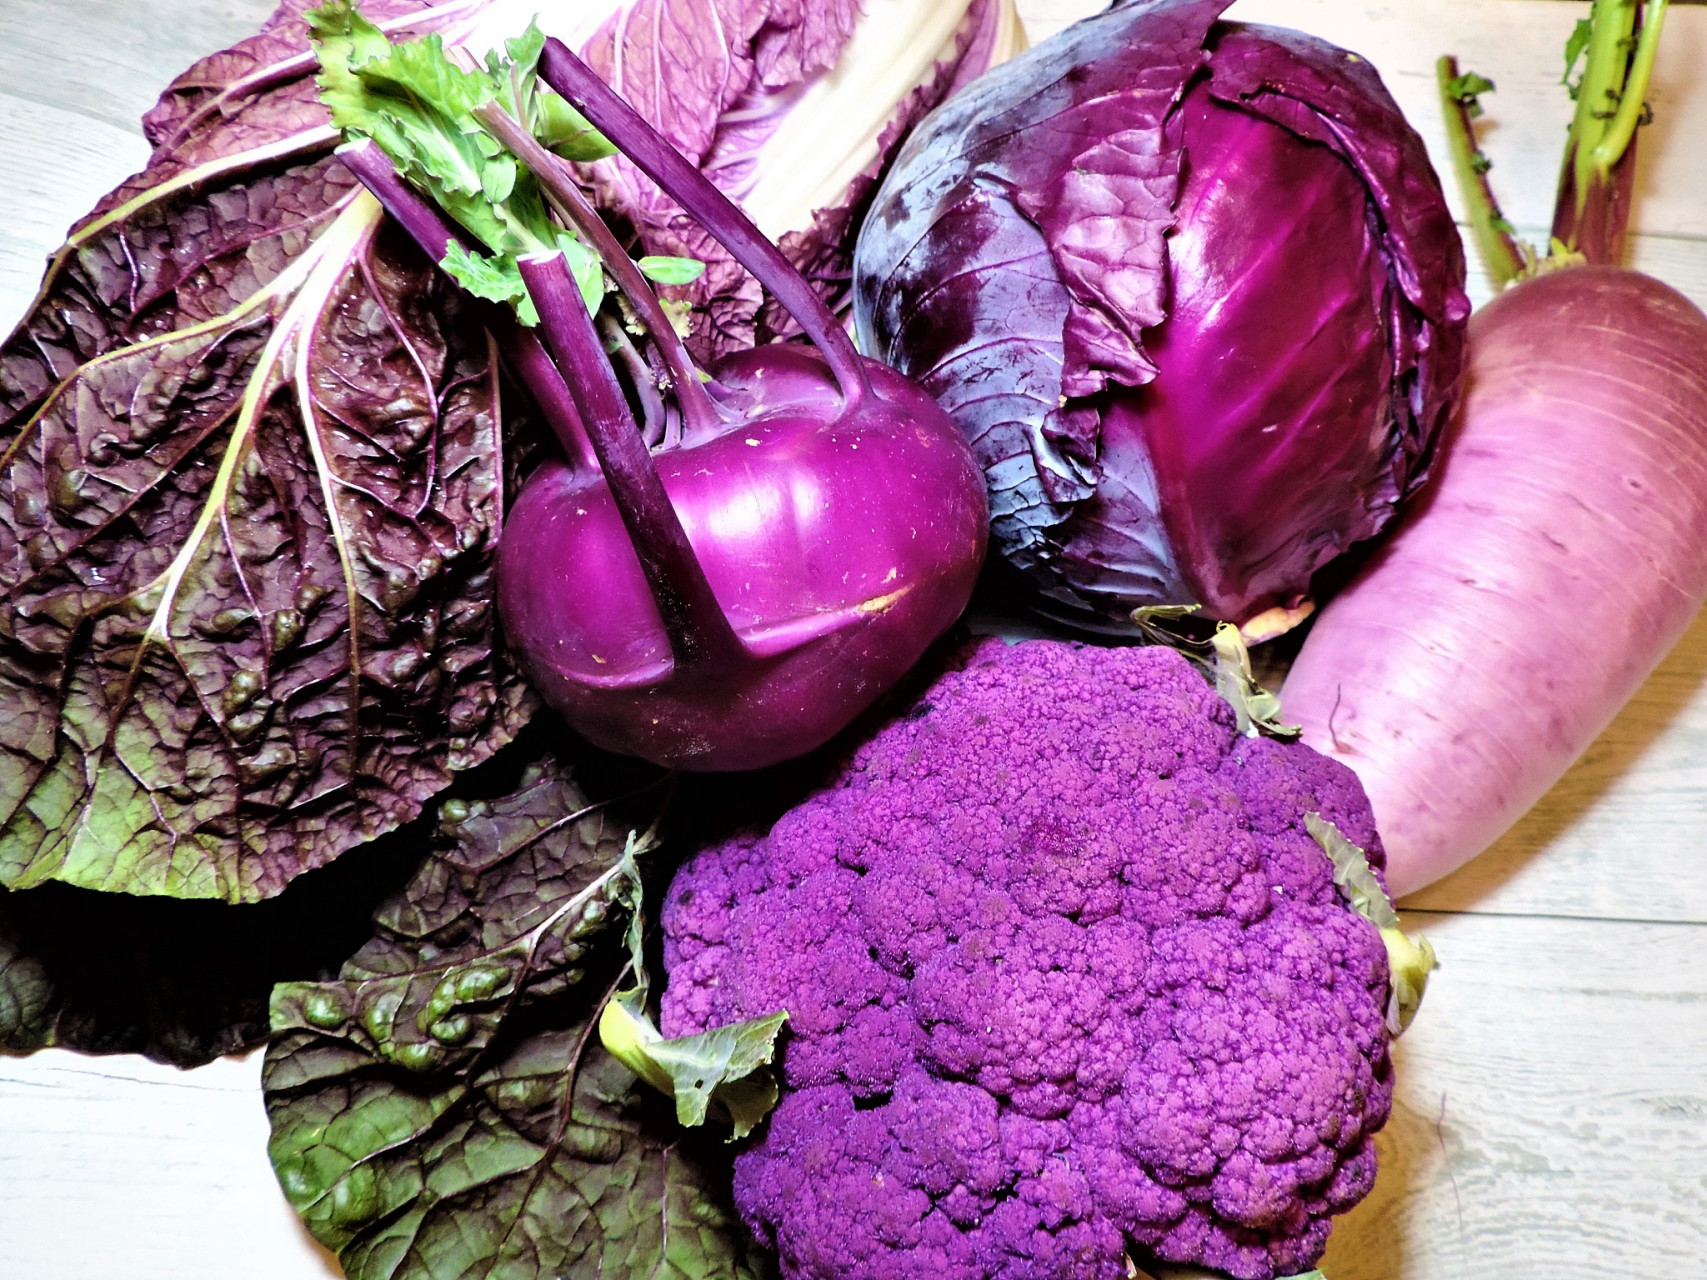 紫色蔬菜,如紫甘蓝,紫洋葱,红苋菜,茄子等,因其深色所含的花青素和